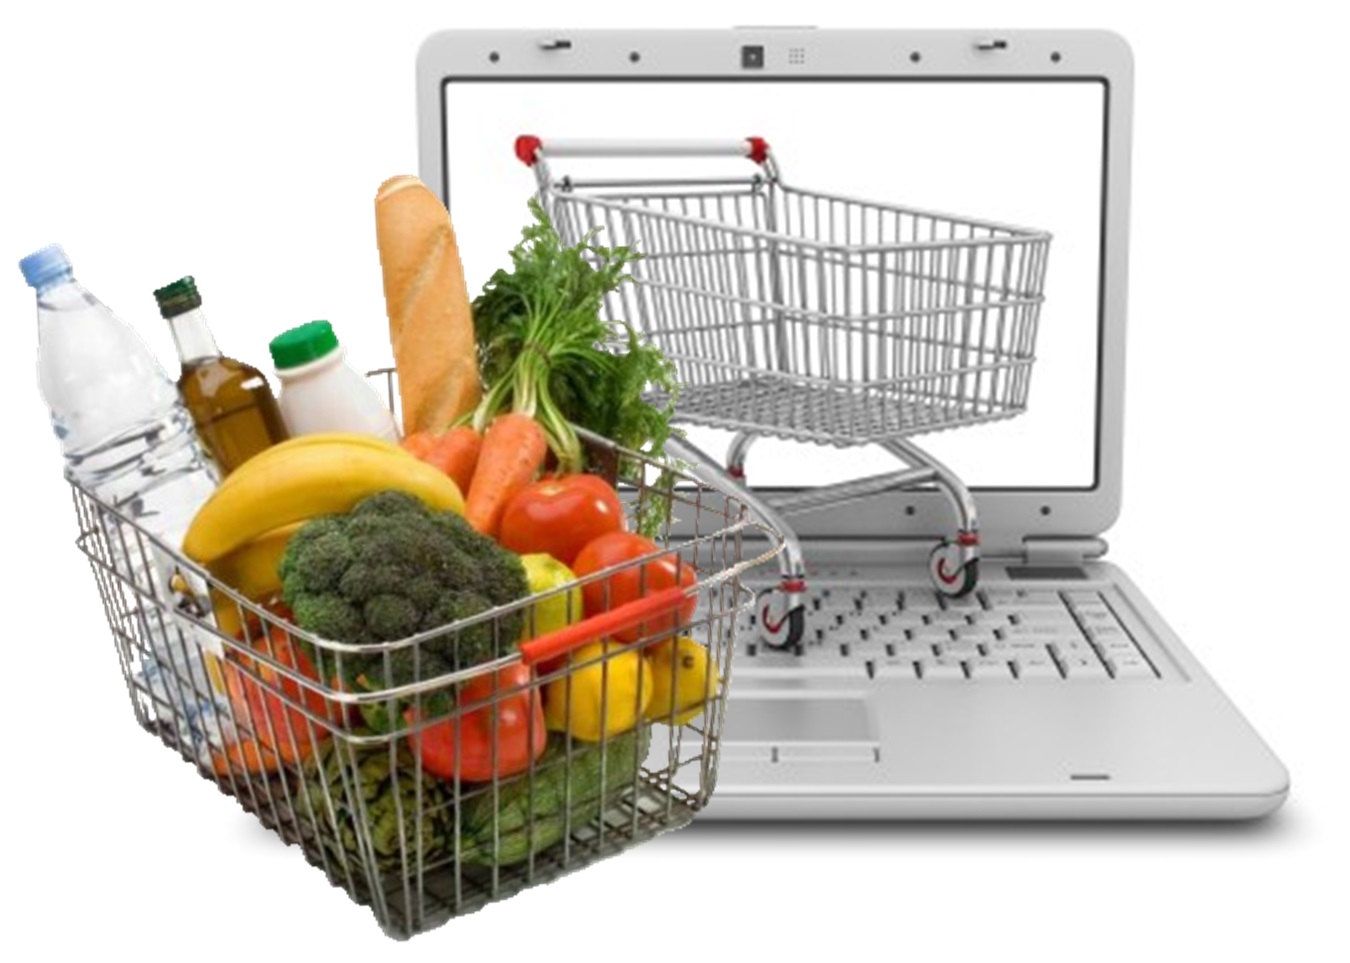 Интернет магазине можно приобрести. Интернет магазин продуктов. Продовольственные товары. Интернет магазин. Розничная торговля продовольственными товарами.